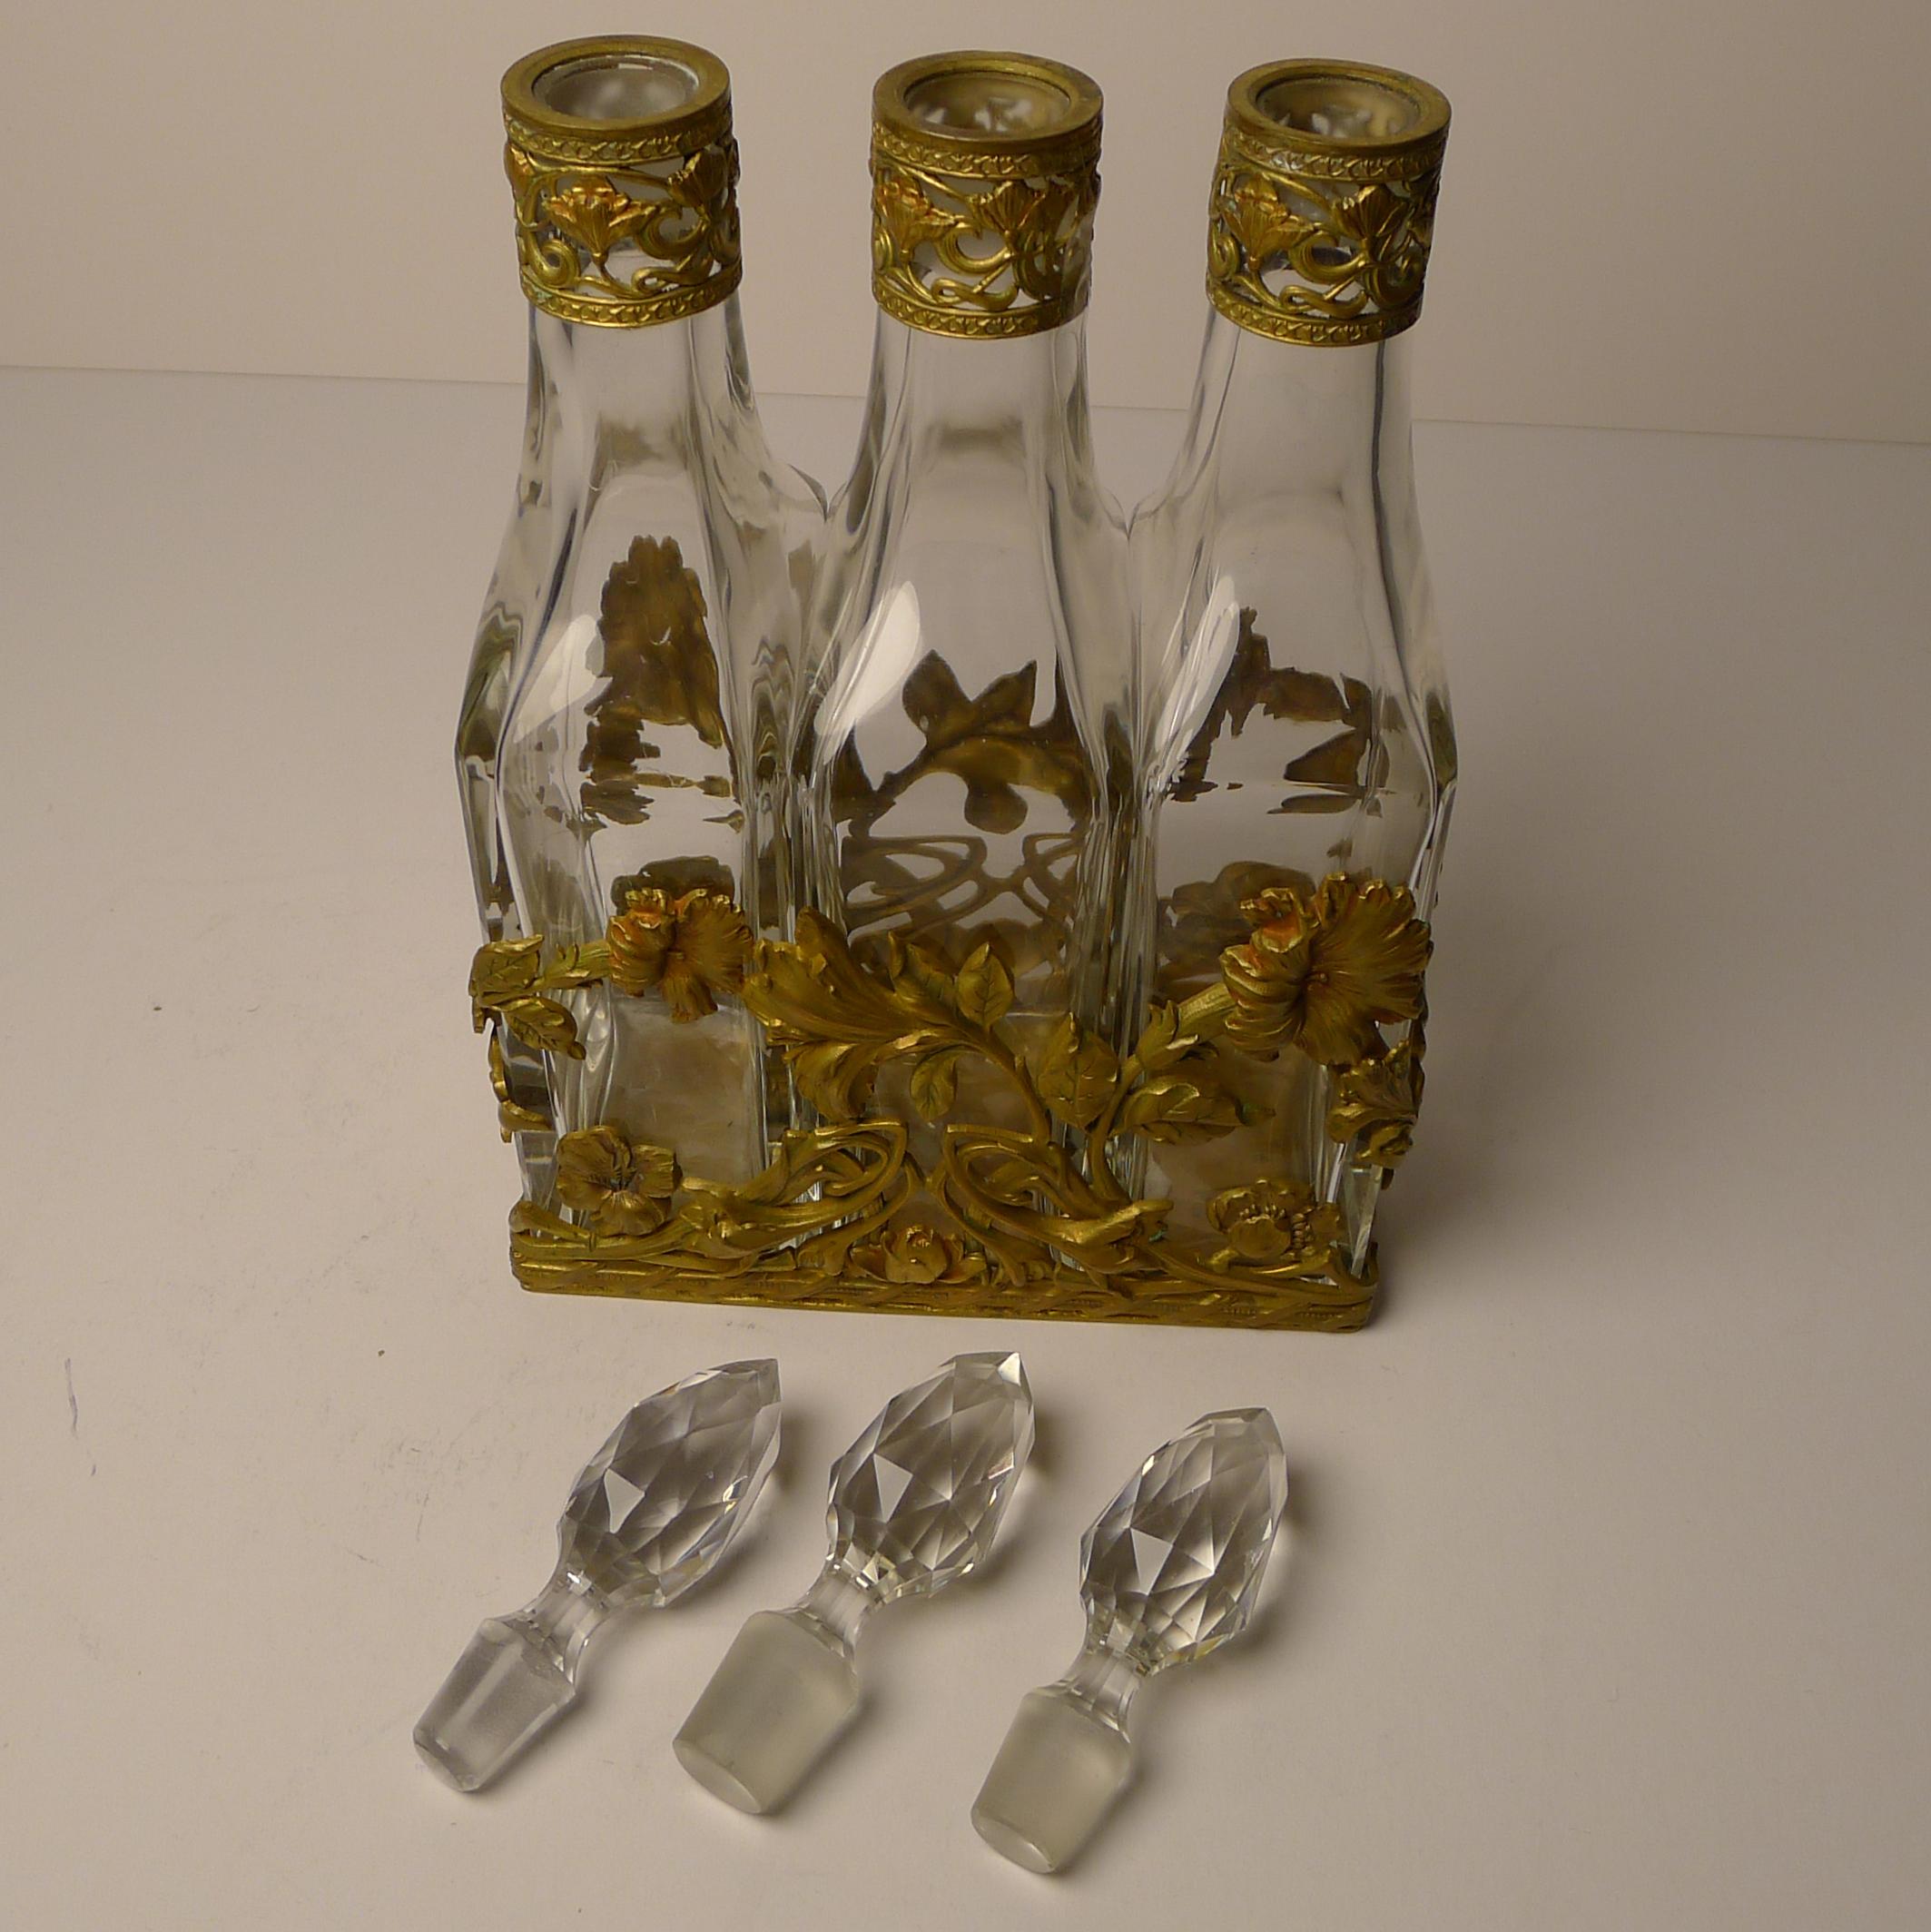 French Art Nouveau Liquor Decanter Set / Perfume Caddy c.1900 For Sale 10